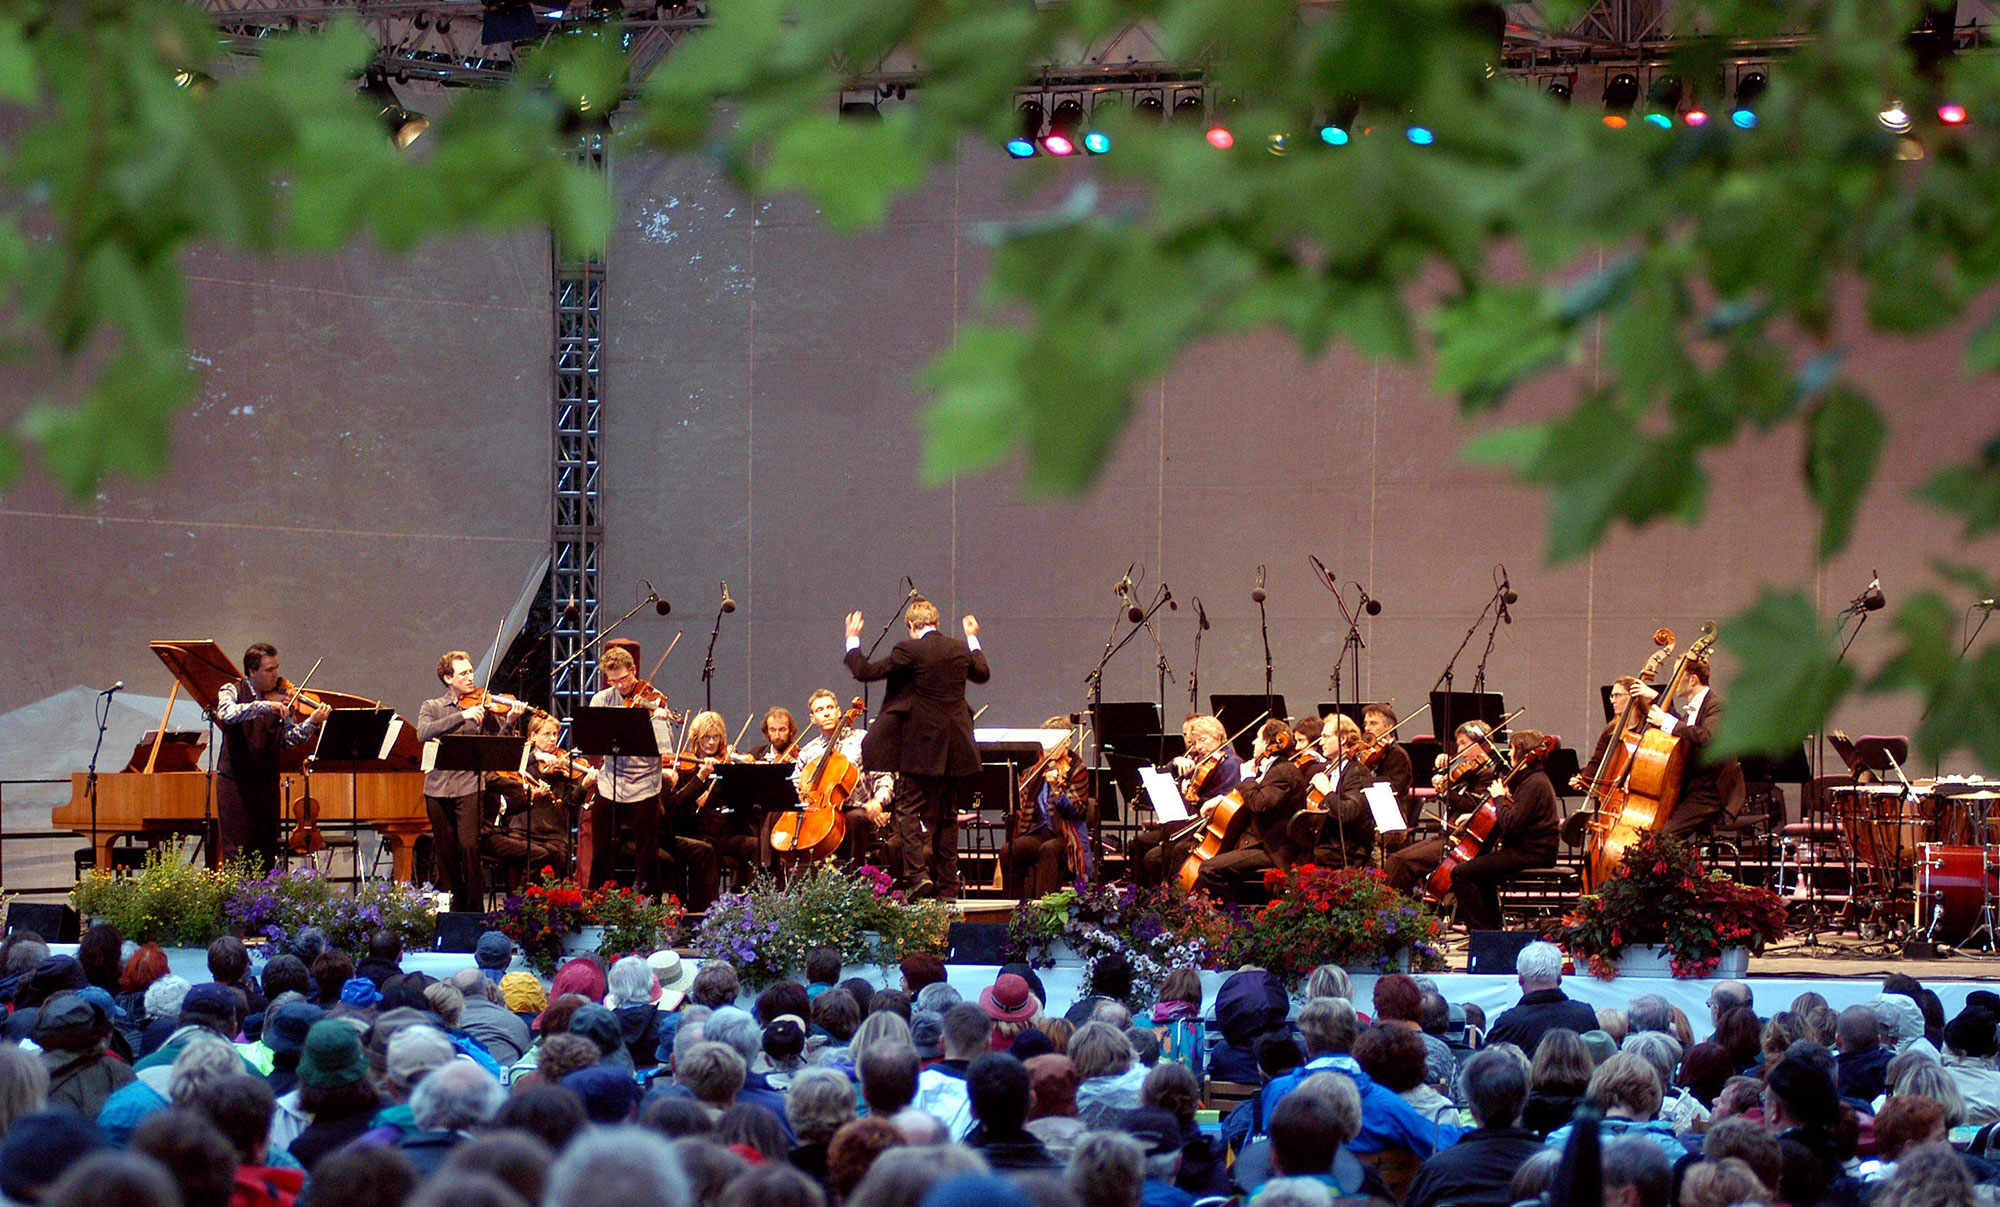 Blick durch Blätter hindurch auf eine Bühne mit einem klassischen Orchester. Davor das Publikum